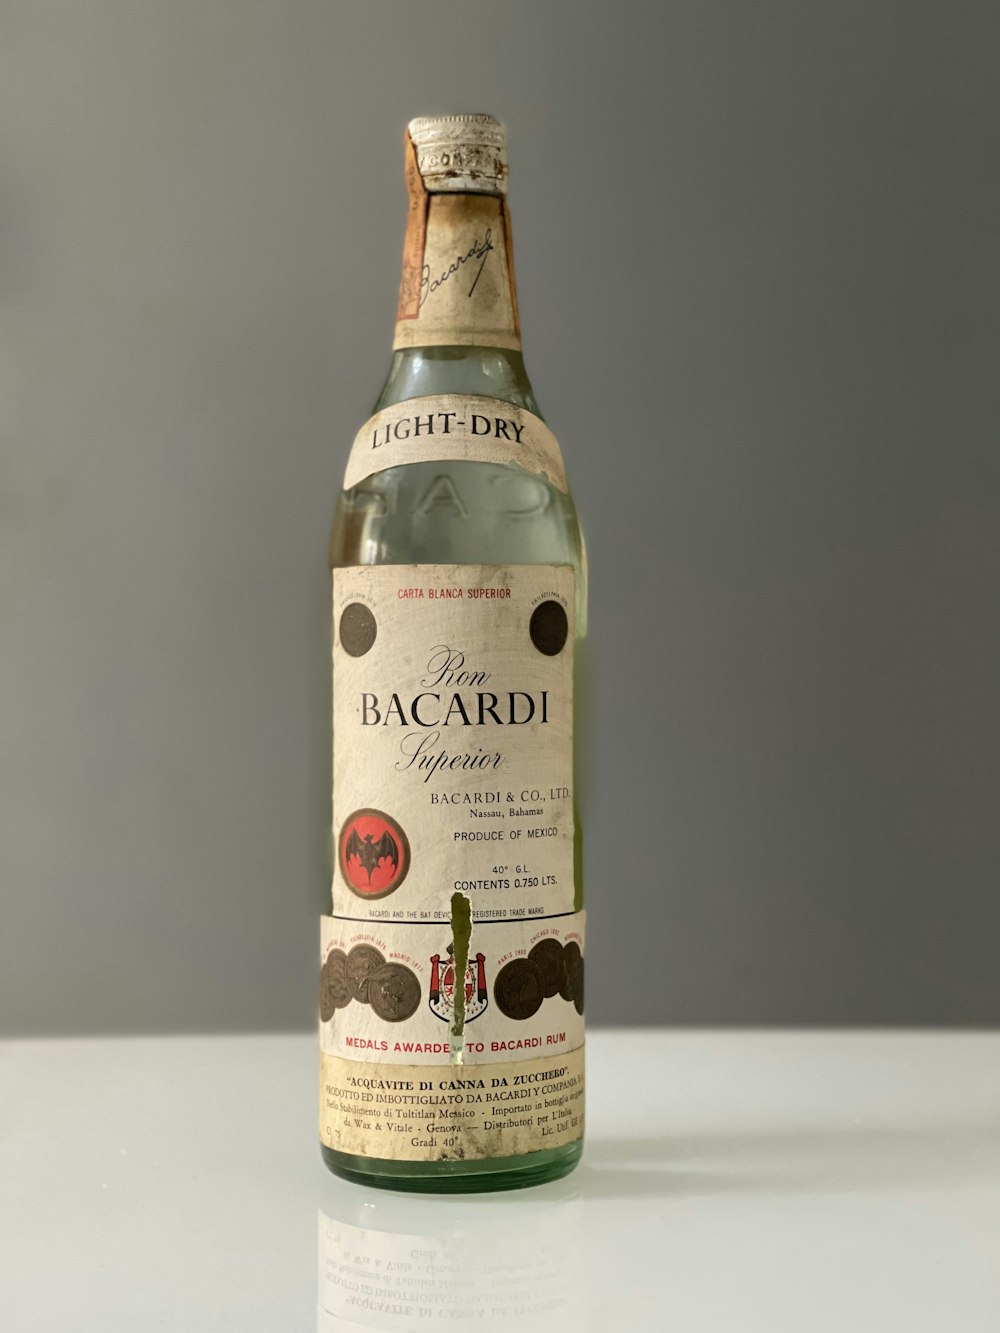 une bouteille de vin bacardi posée sur une table